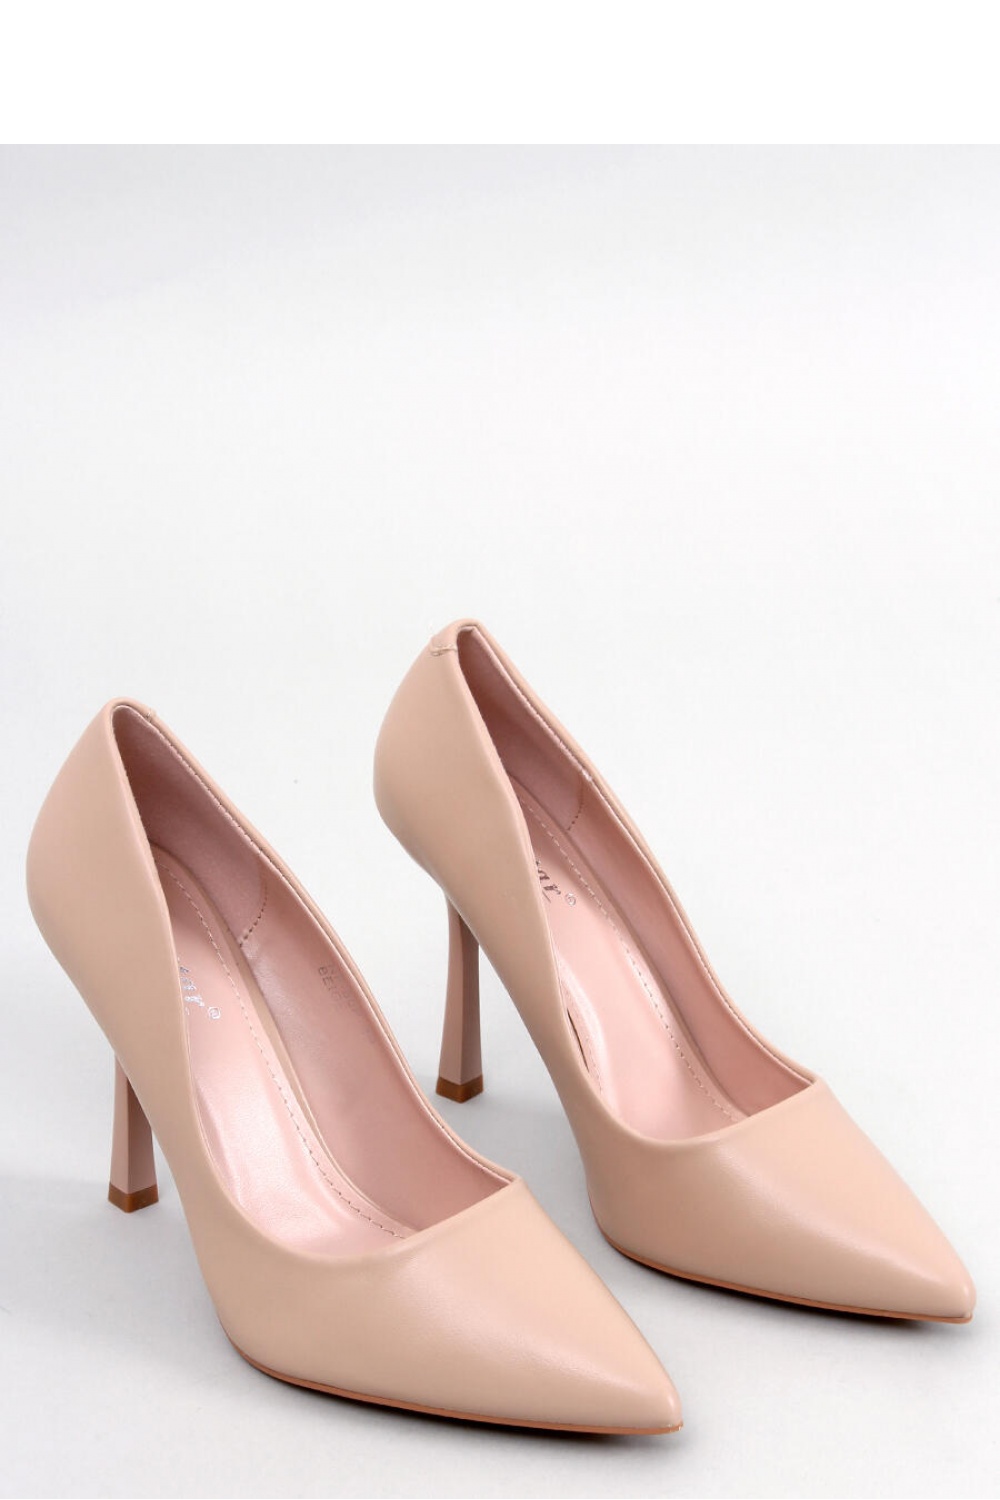 High heels model 177332 Inello